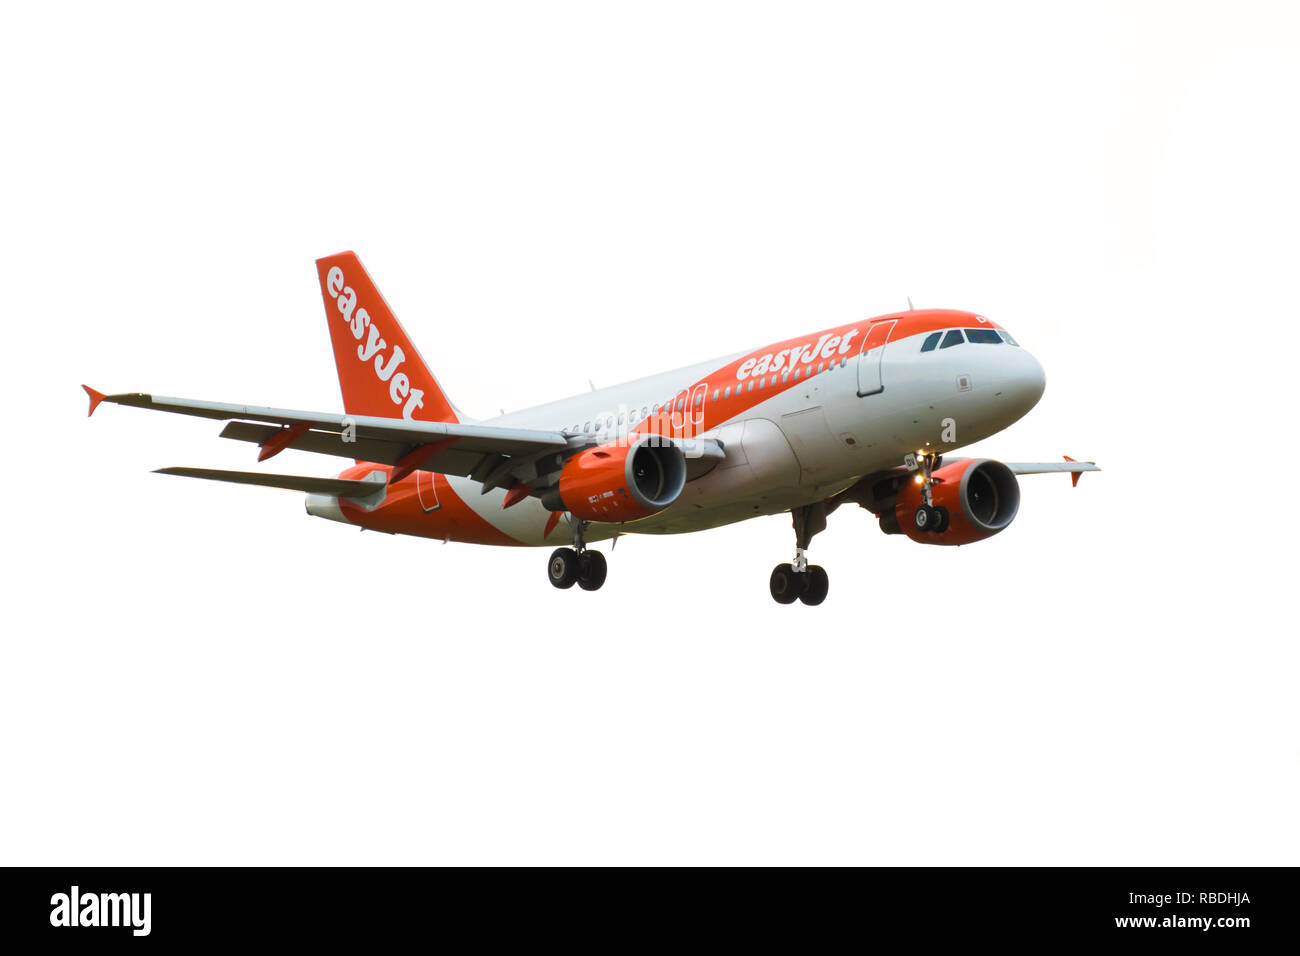 L' AEROPORTO DI GATWICK, England, Regno Unito - 30 agosto 2018: Un easyJet Airlines Airbus A319-100 piano arriva per atterrare all'Aeroporto Gatwick di Londra. Isolato su bianco Foto Stock